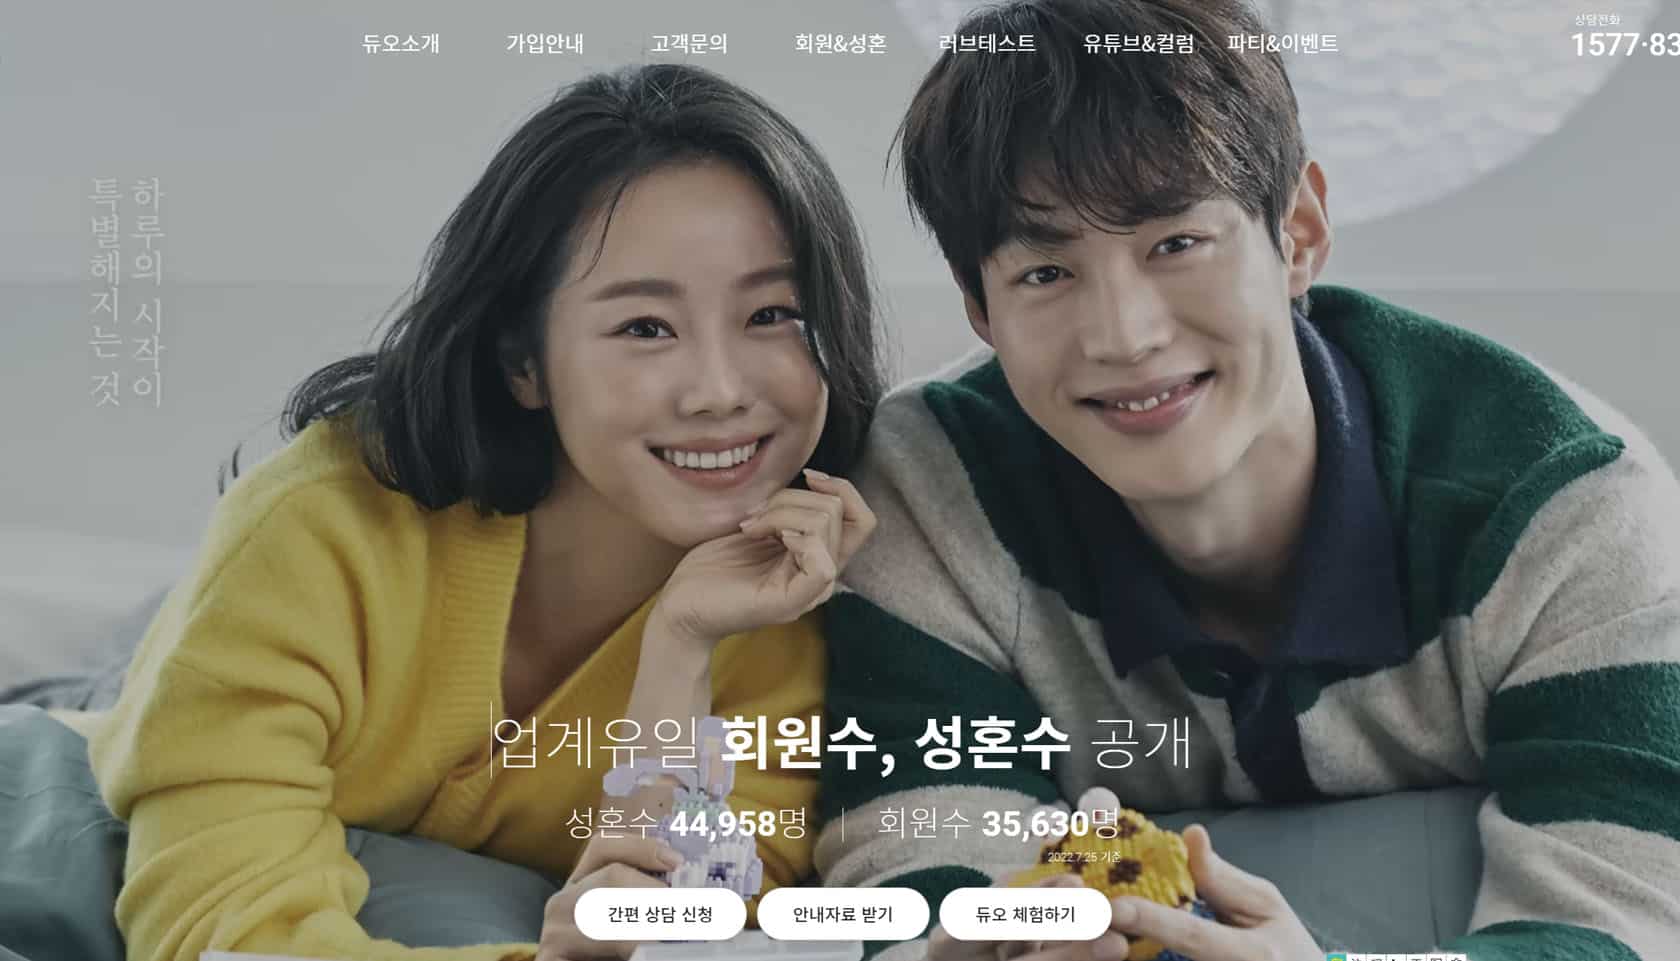 韓國Duo婚姻機構網站